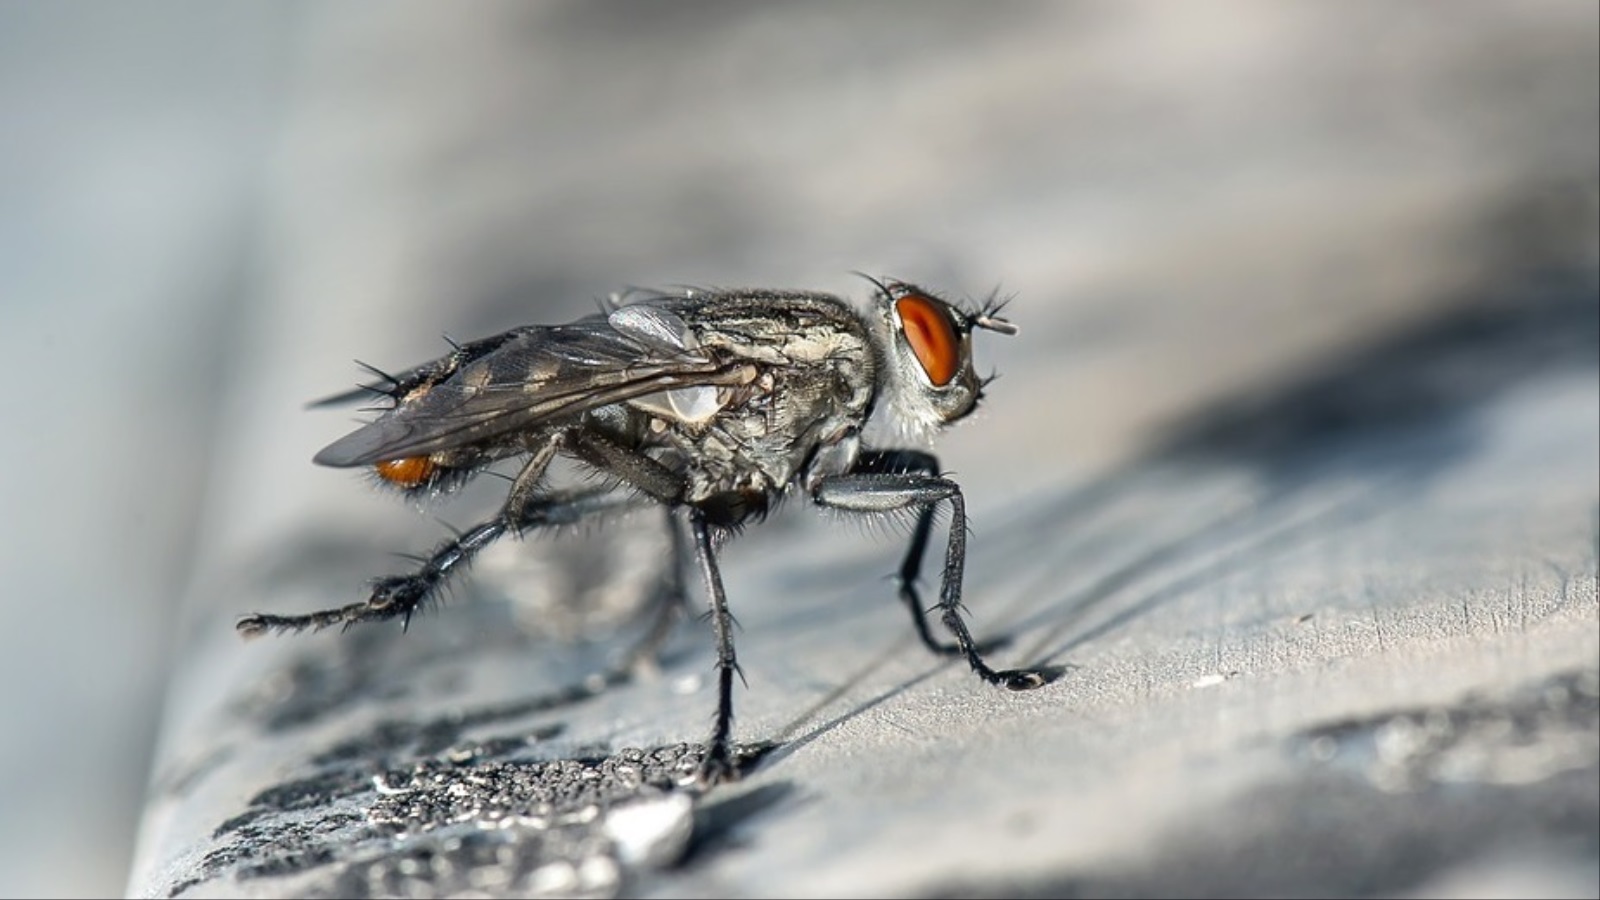 ‪المئات من الذباب يتطاير داخل اثنين من أربعة أماكن لتربية الحشرات‬ (موقع بيكسبياي)